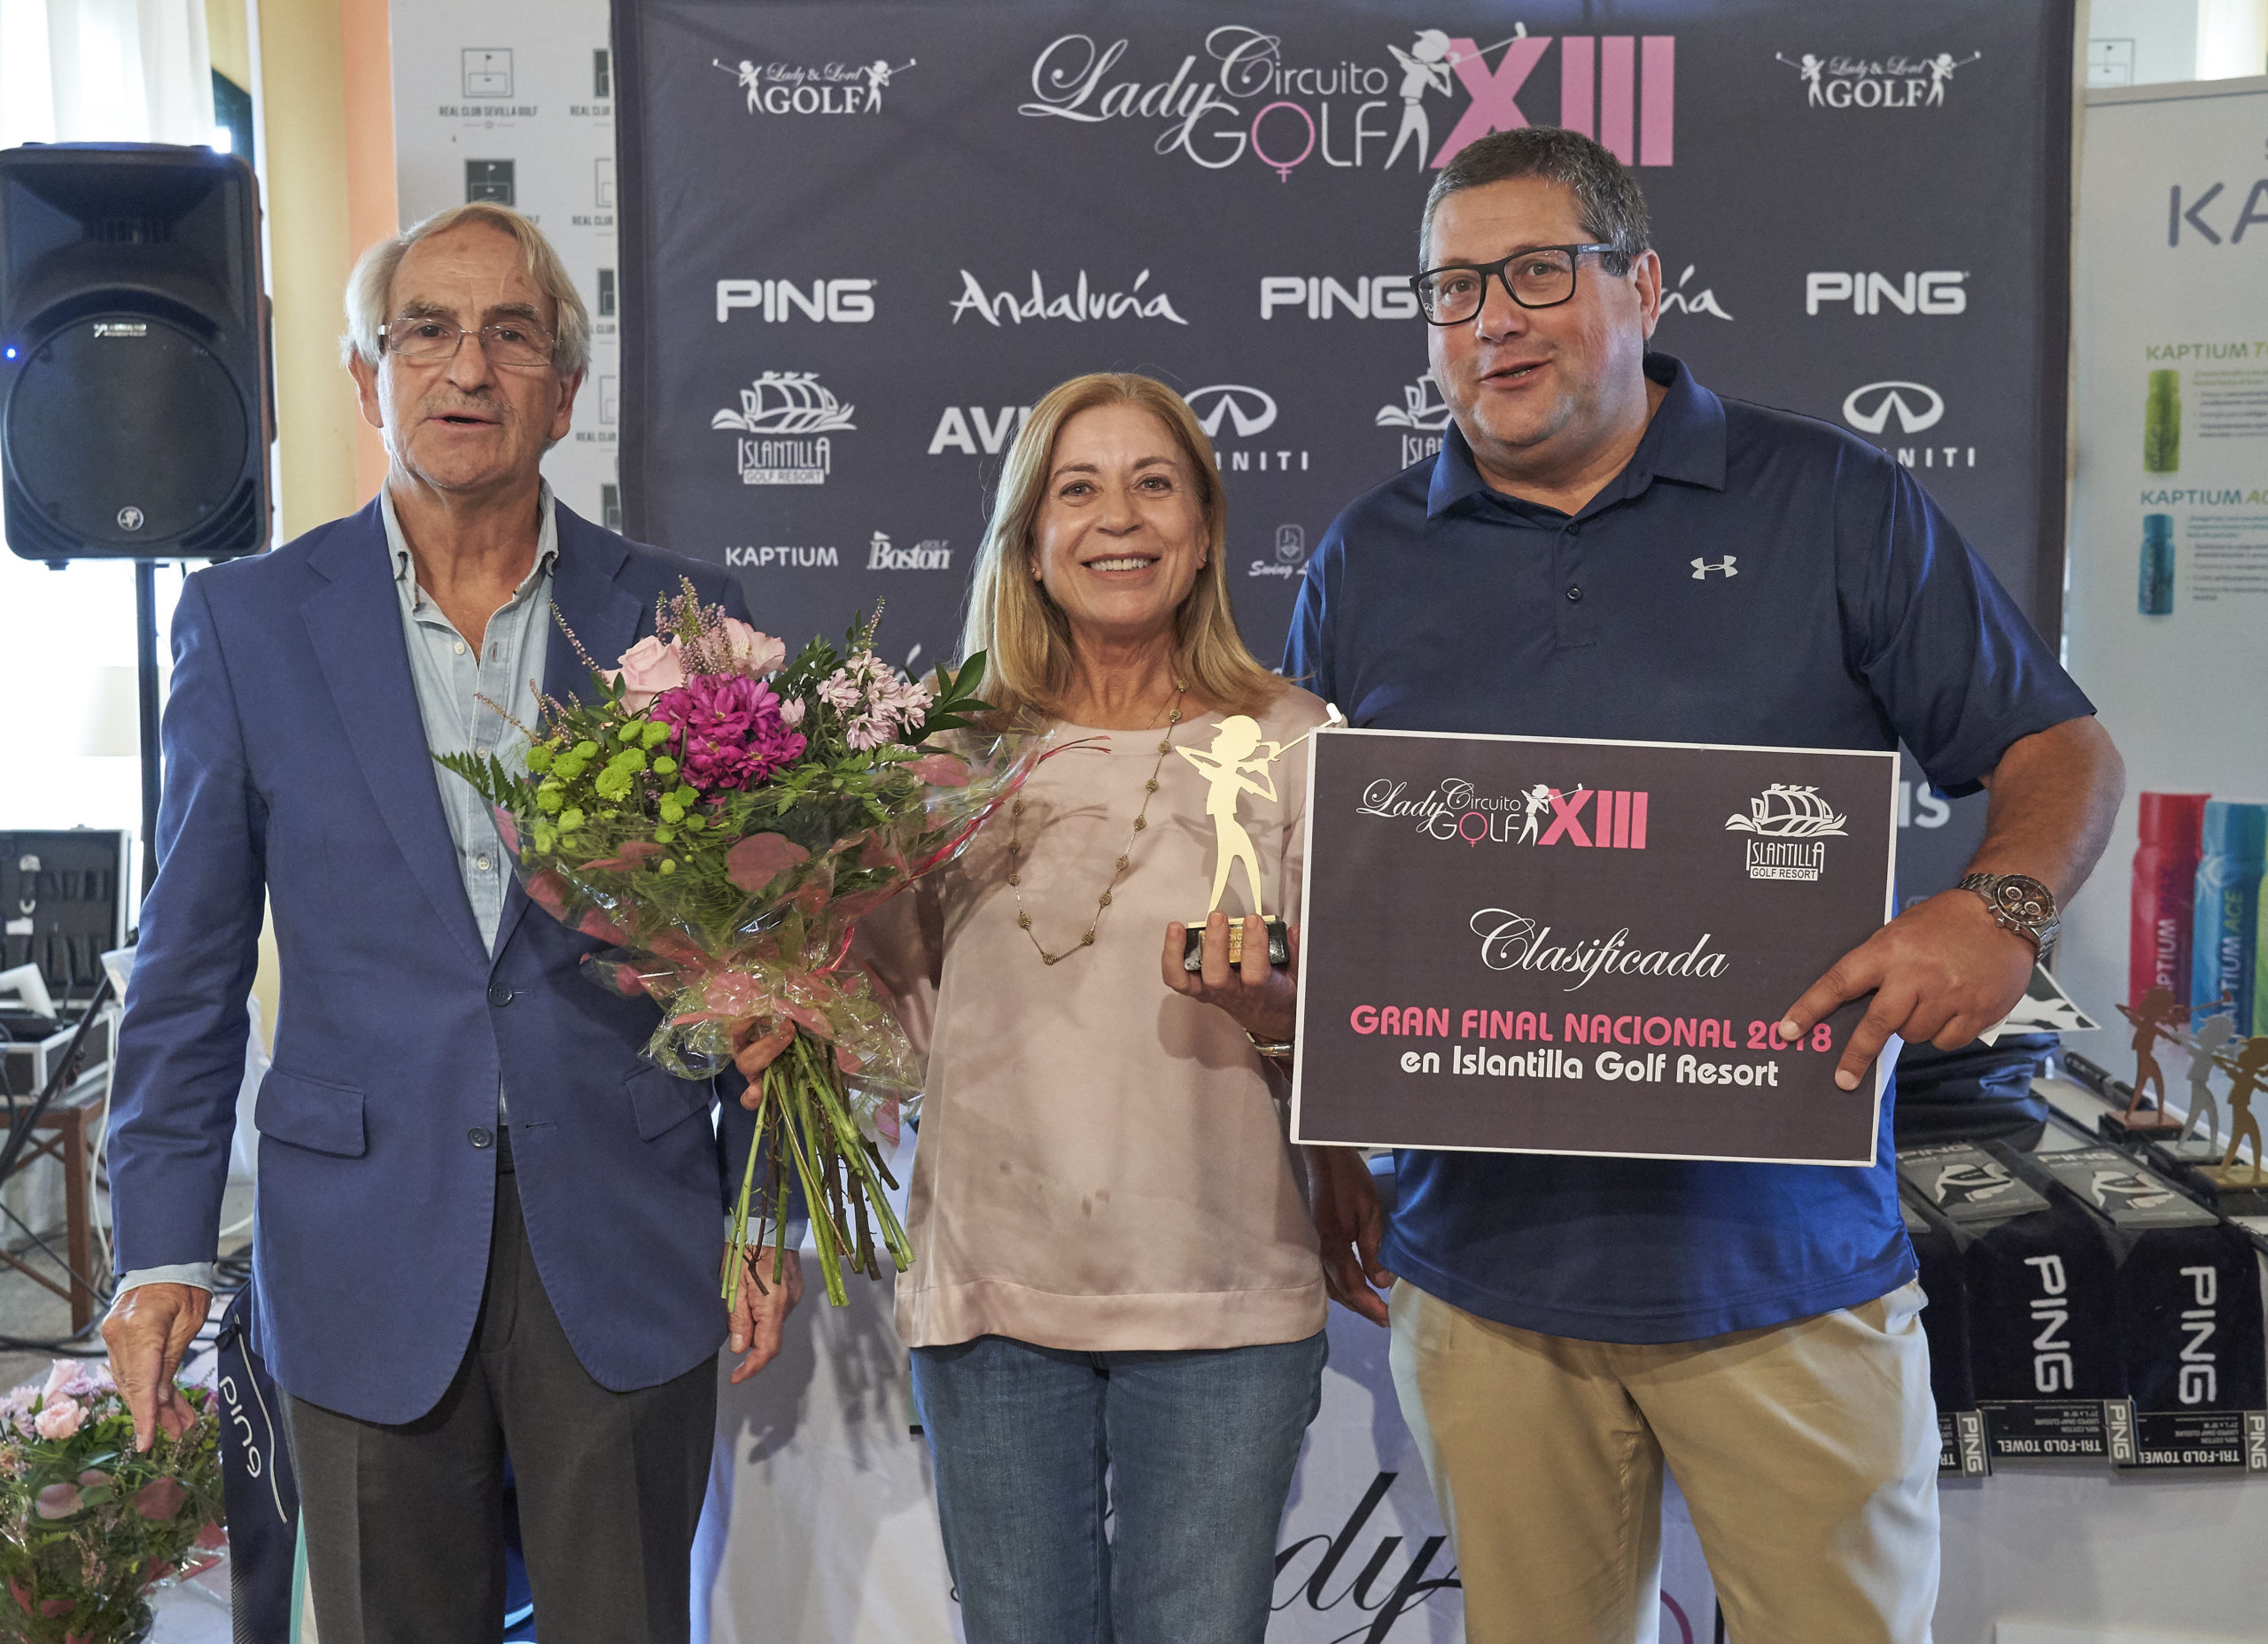 XIII Circuito Lady & Lord en el Real Club Sevilla Golf